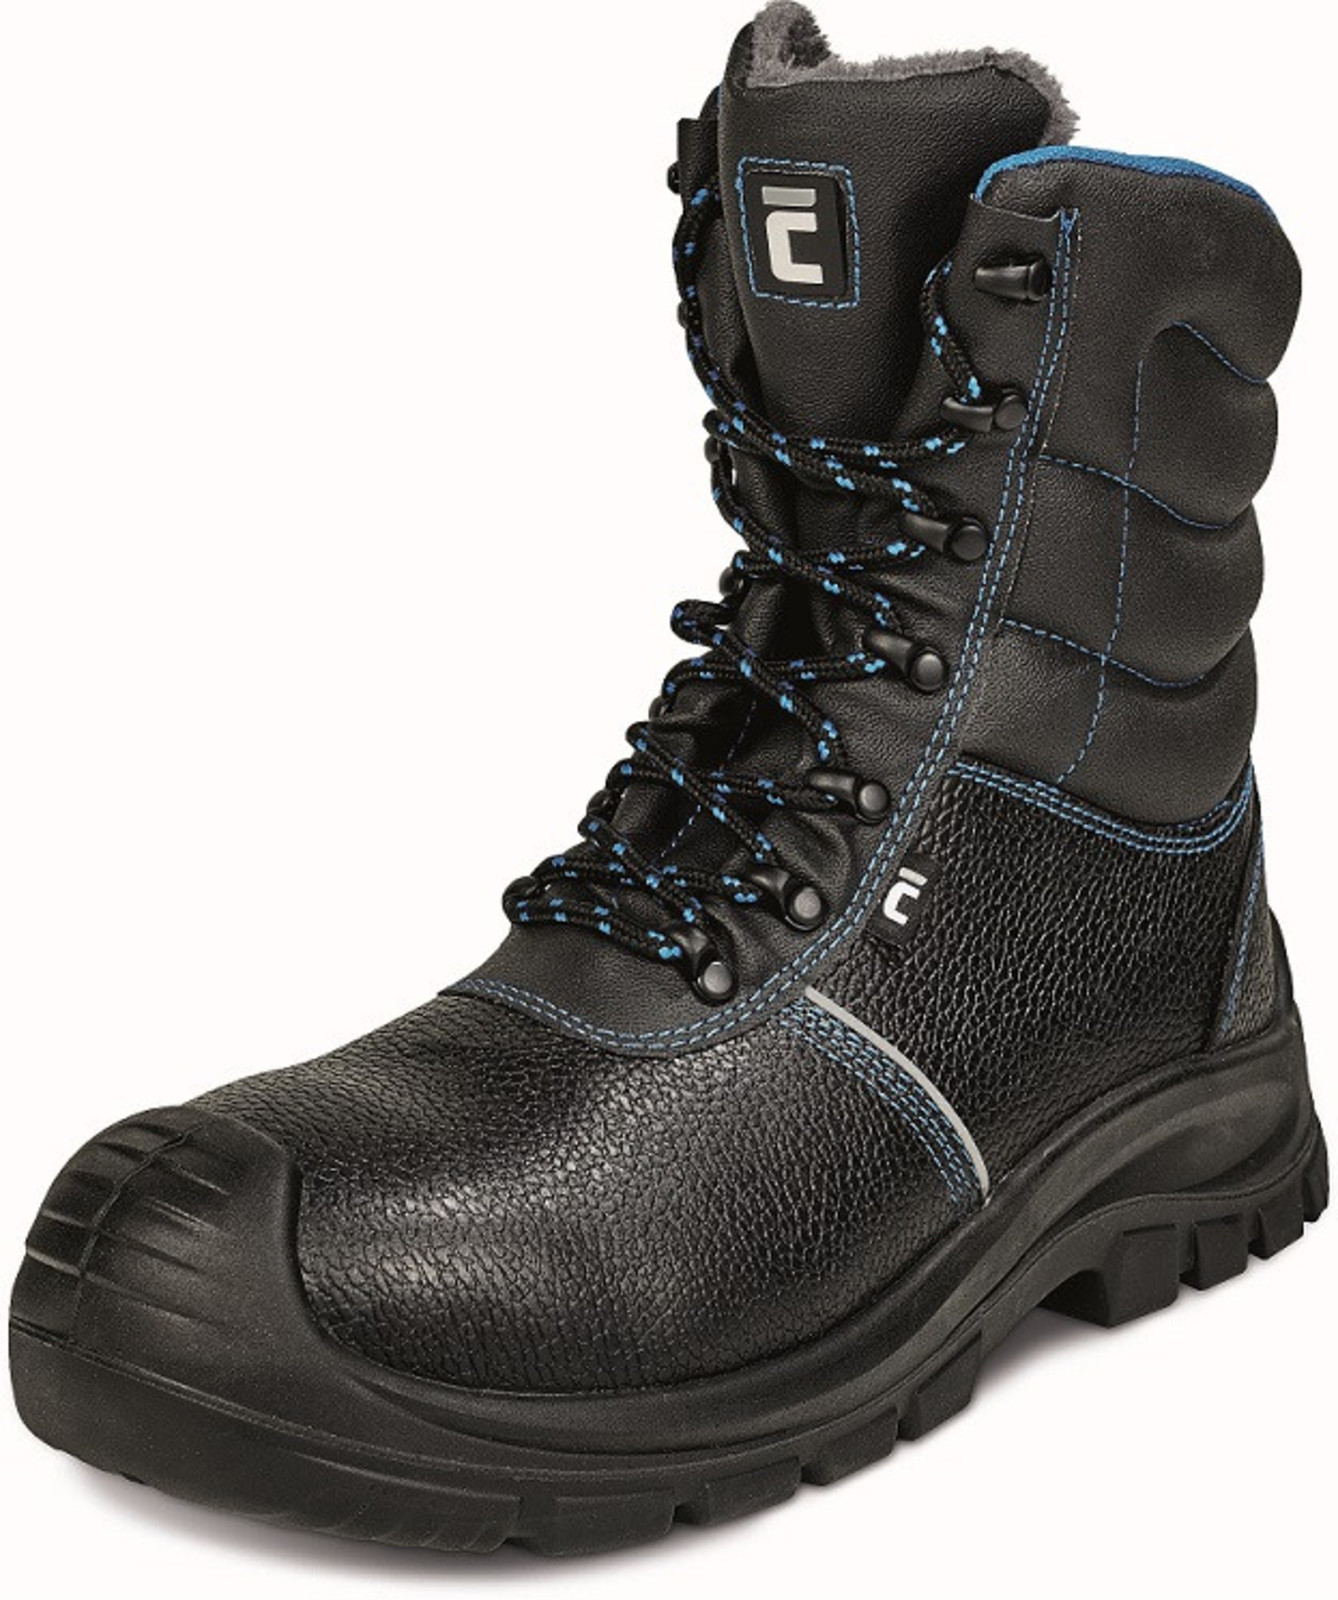 Zimná vysoká bezpečnostná obuv Raven XT S3 - veľkosť: 45, farba: čierna